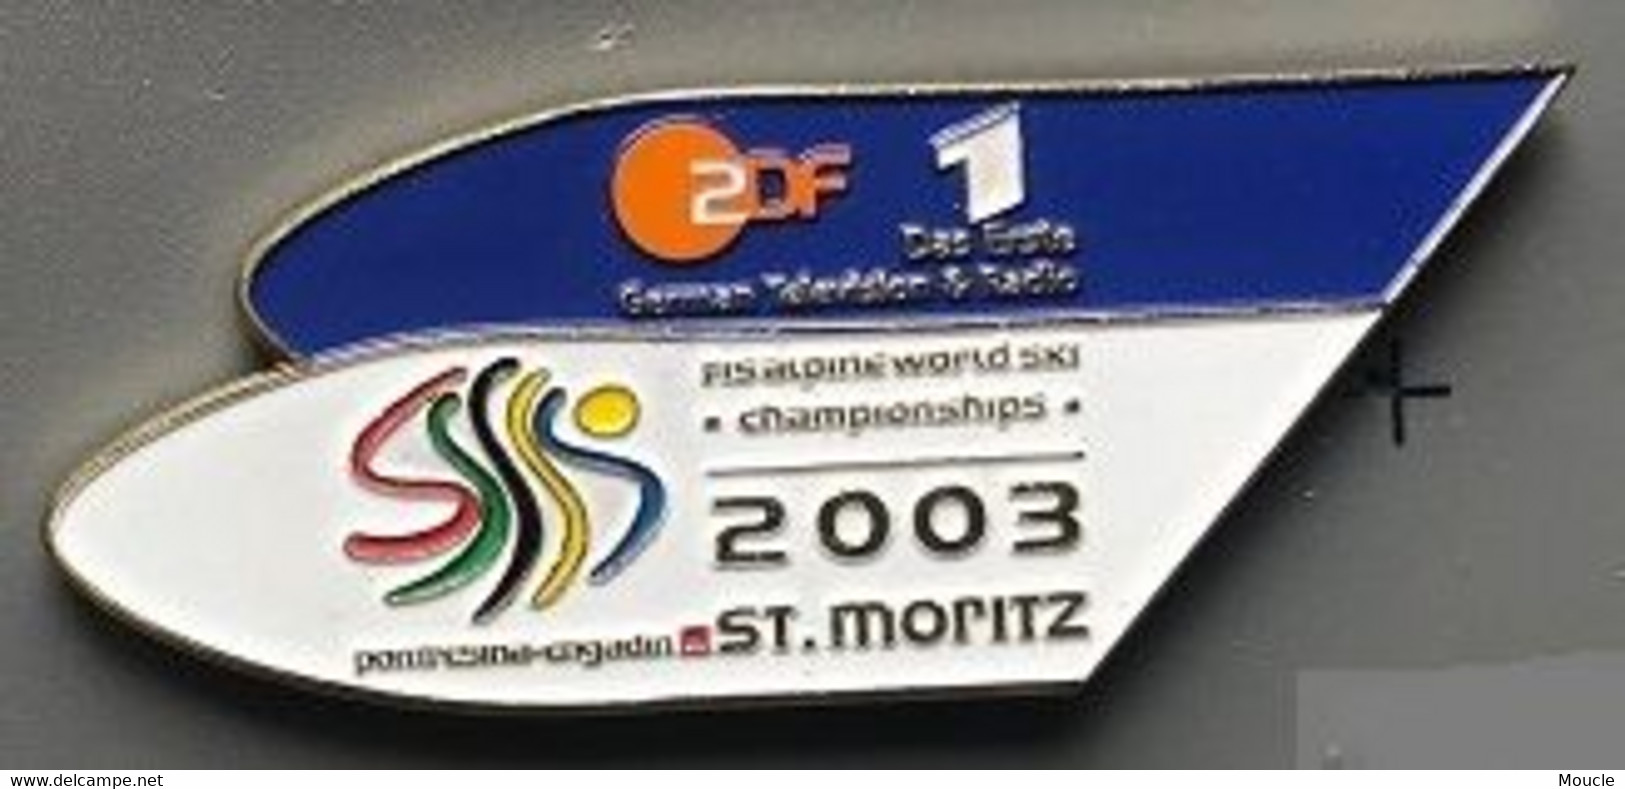 ZDF 1 - DAS ERSTE - GERMAN TELEVISON & RADIO - ALLEMAGNE - FIS ALPINE WORLD SKI - CHAMPIONSHIPS 2003 - ST MORITZ - (31) - Medias